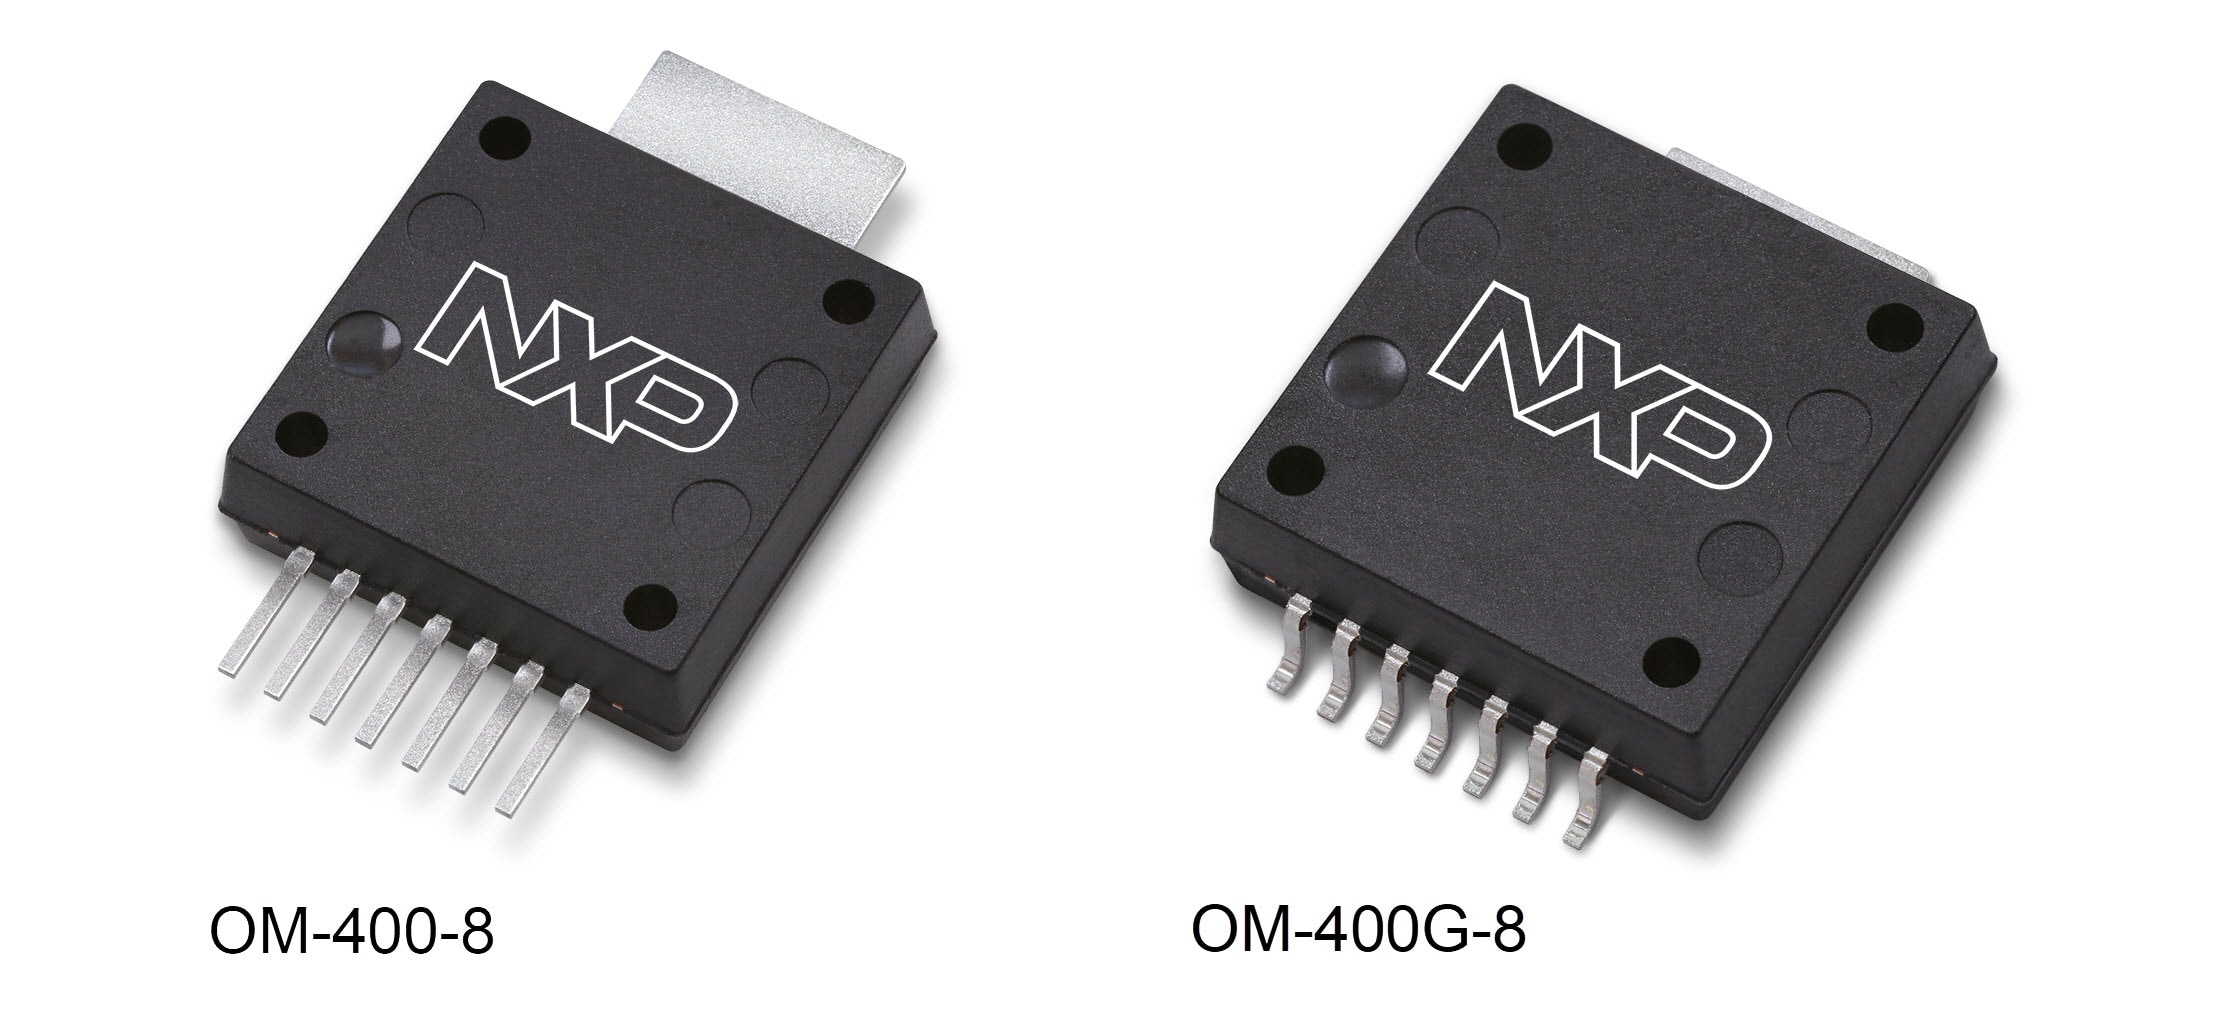 OM-400-8, OM-400G-8 Package Image